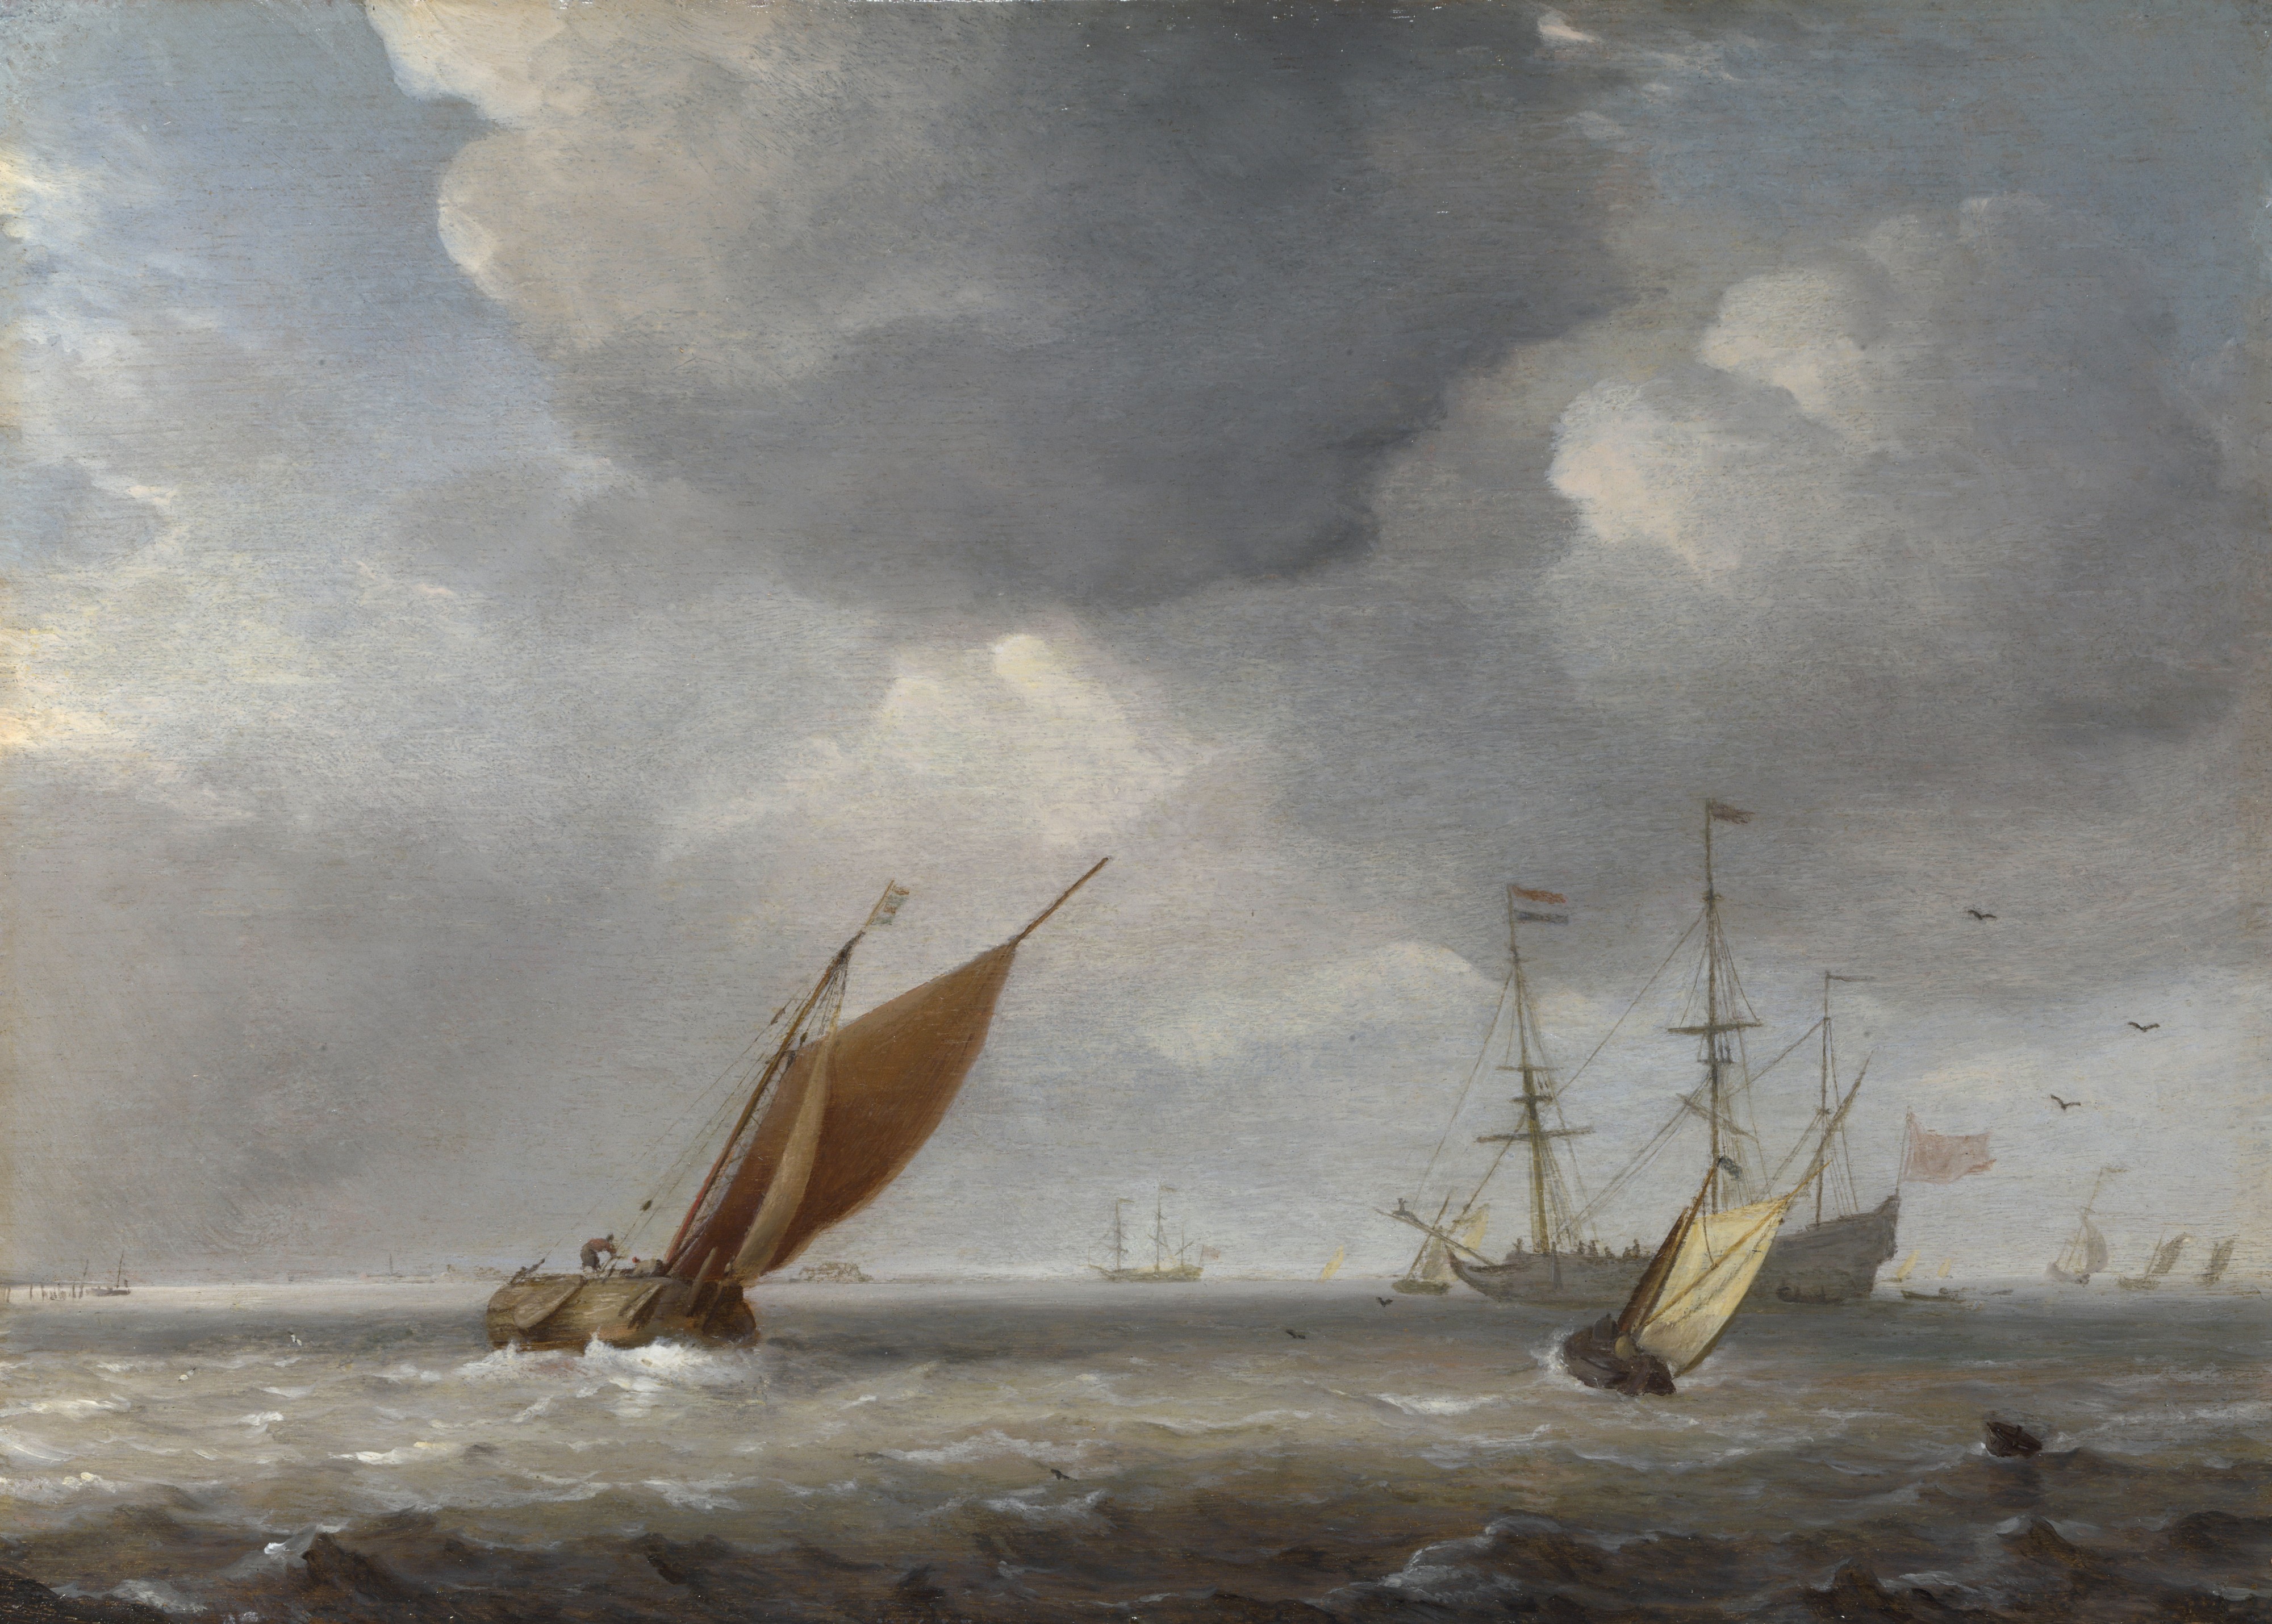 Willem van de Velde II (Studio of) - Small Dutch Vessels in a Breeze